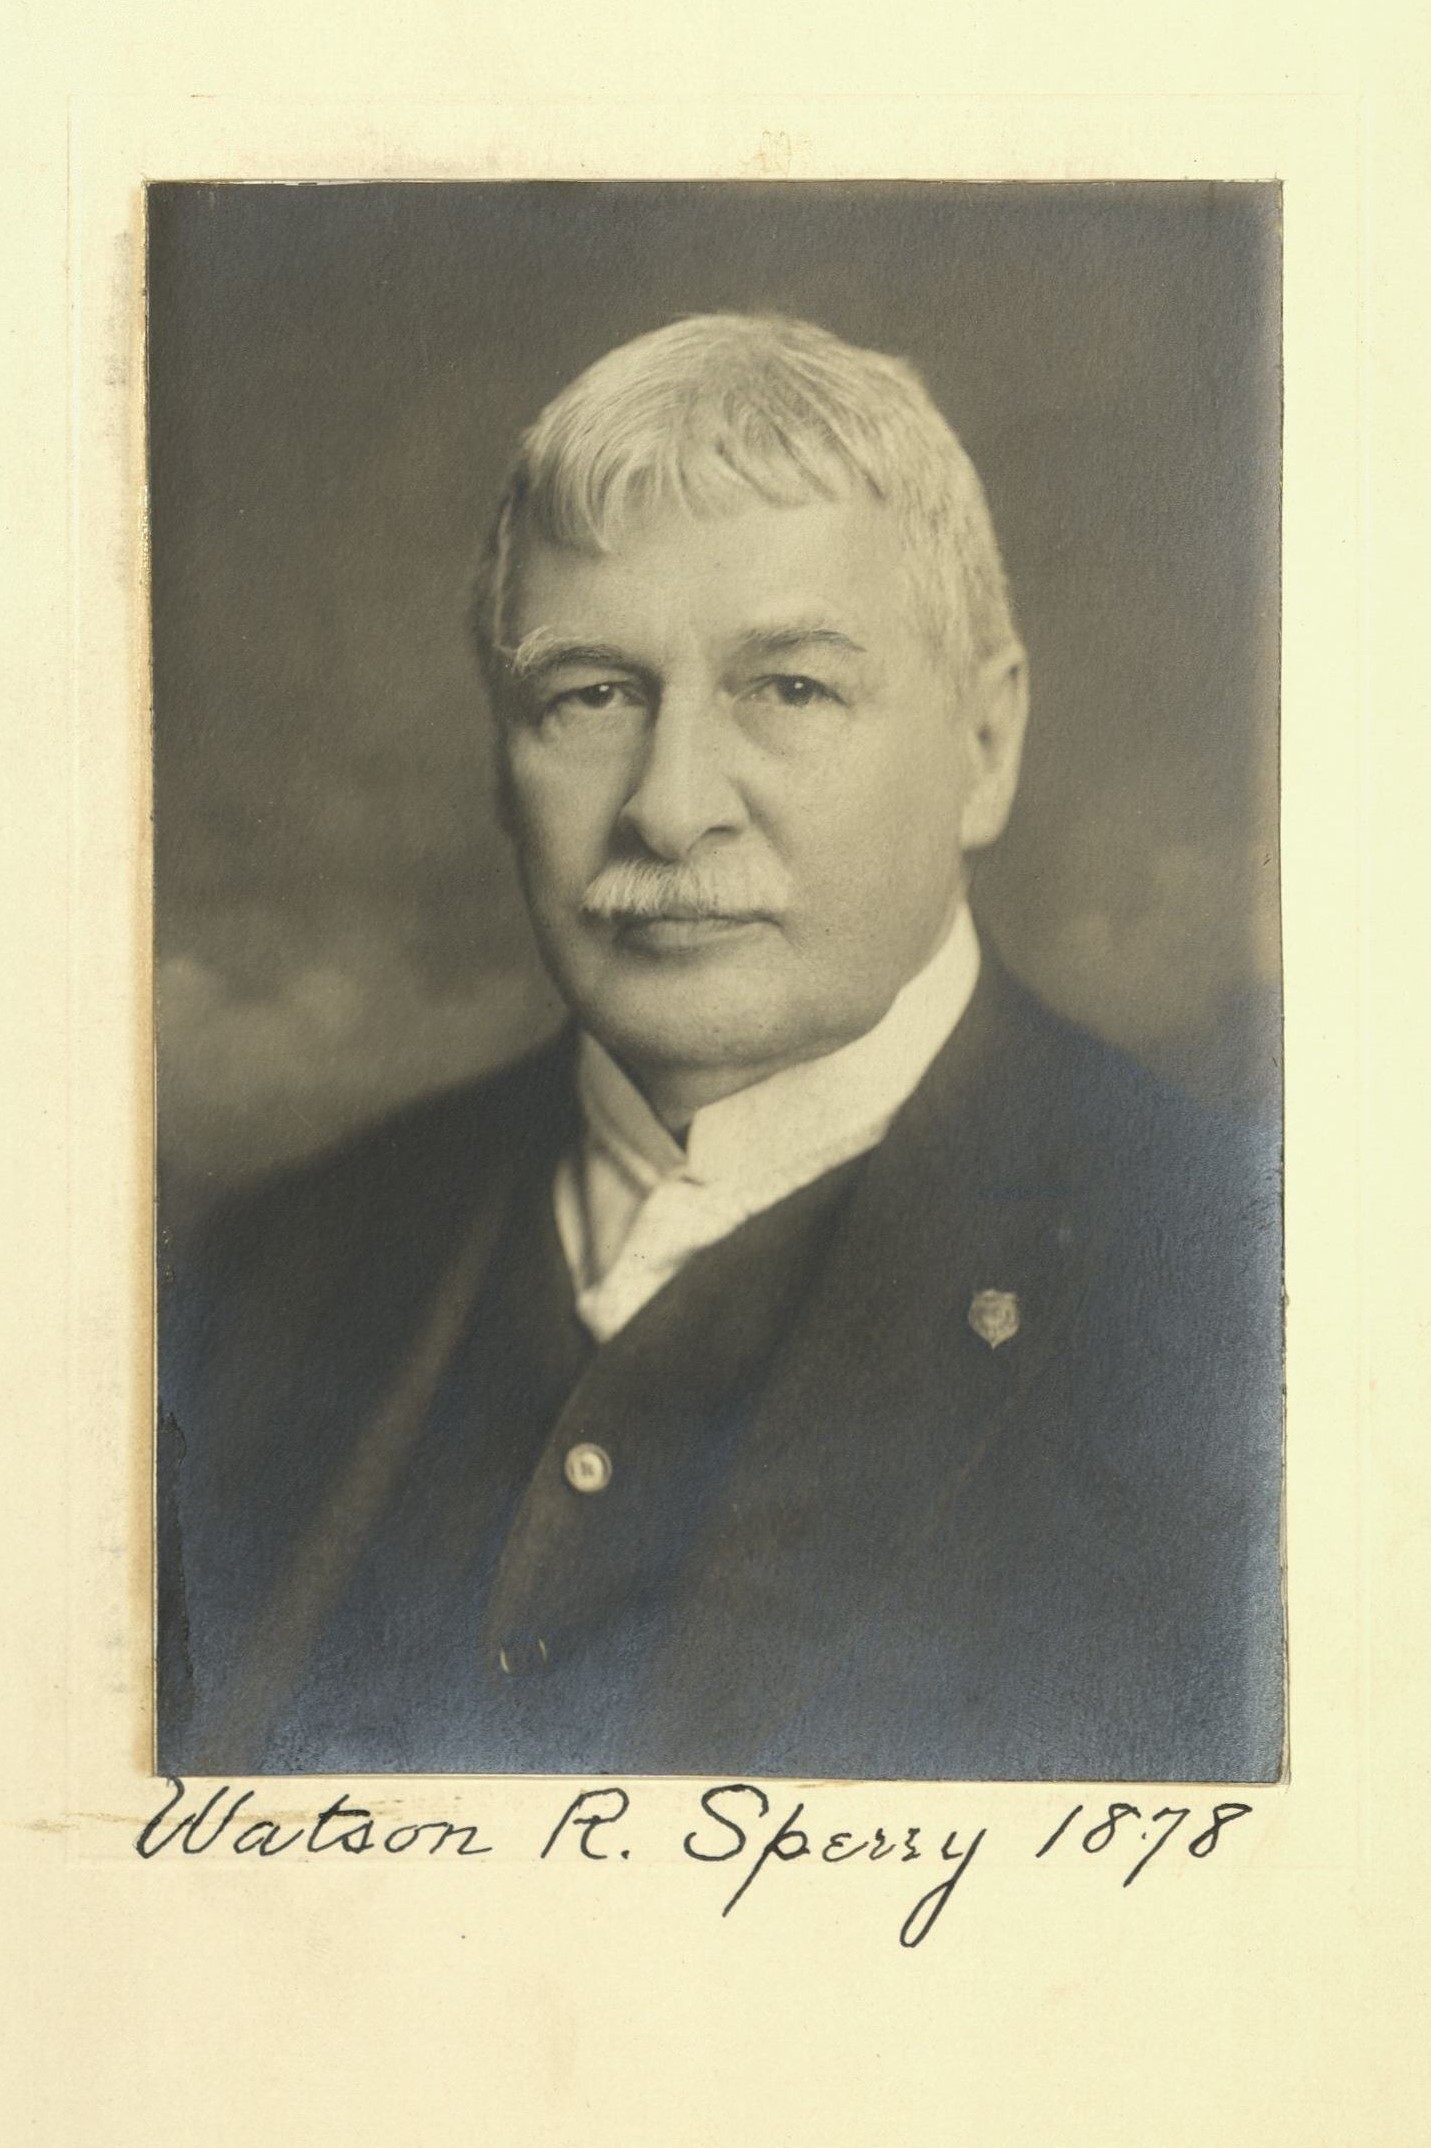 Member portrait of Watson R. Sperry